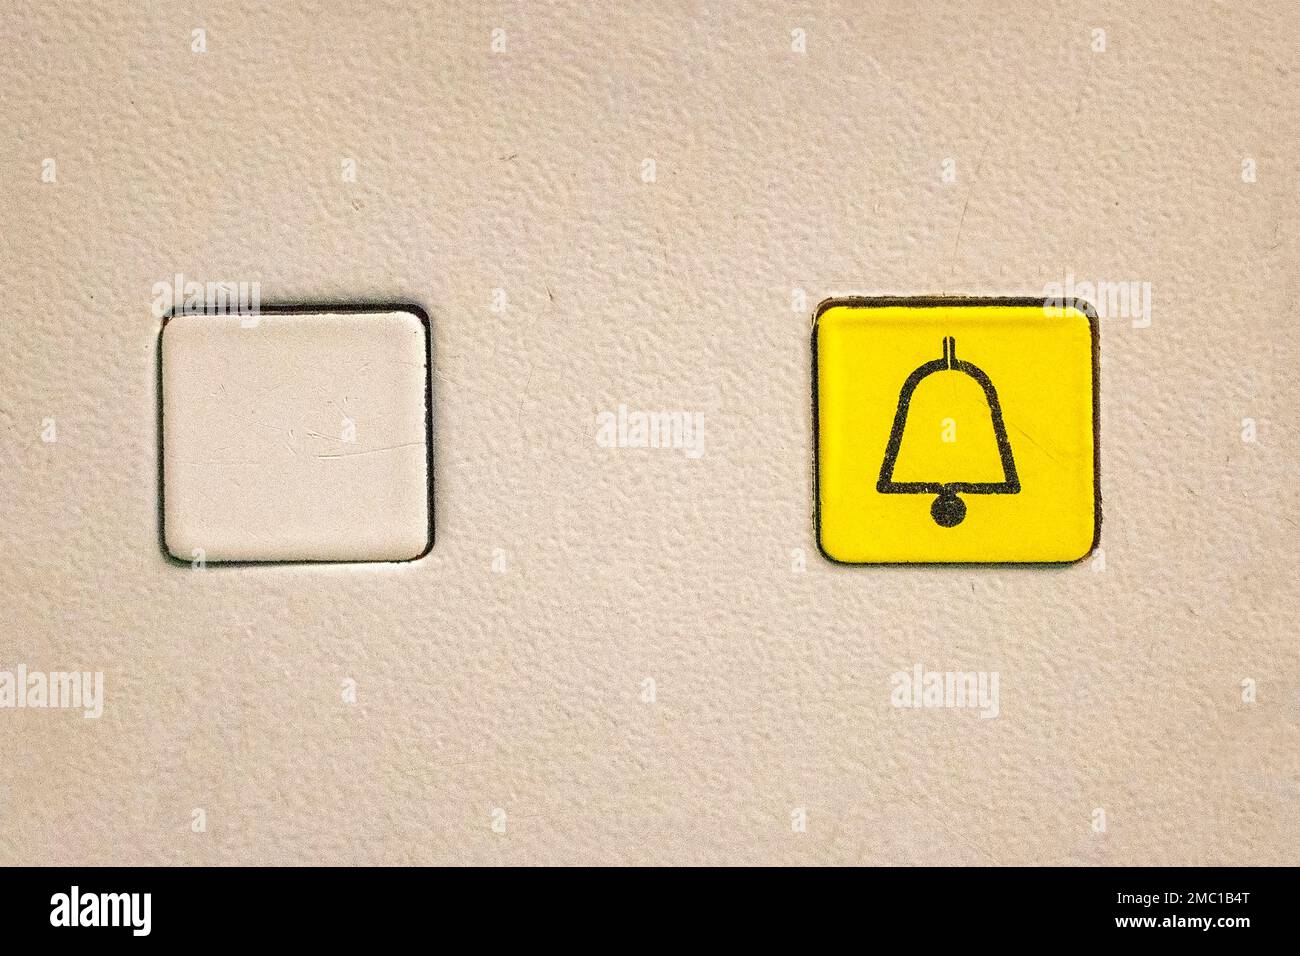 Pulsante giallo quadrato dell'ascensore per chiamare l'assistenza in caso di emergenza Foto Stock